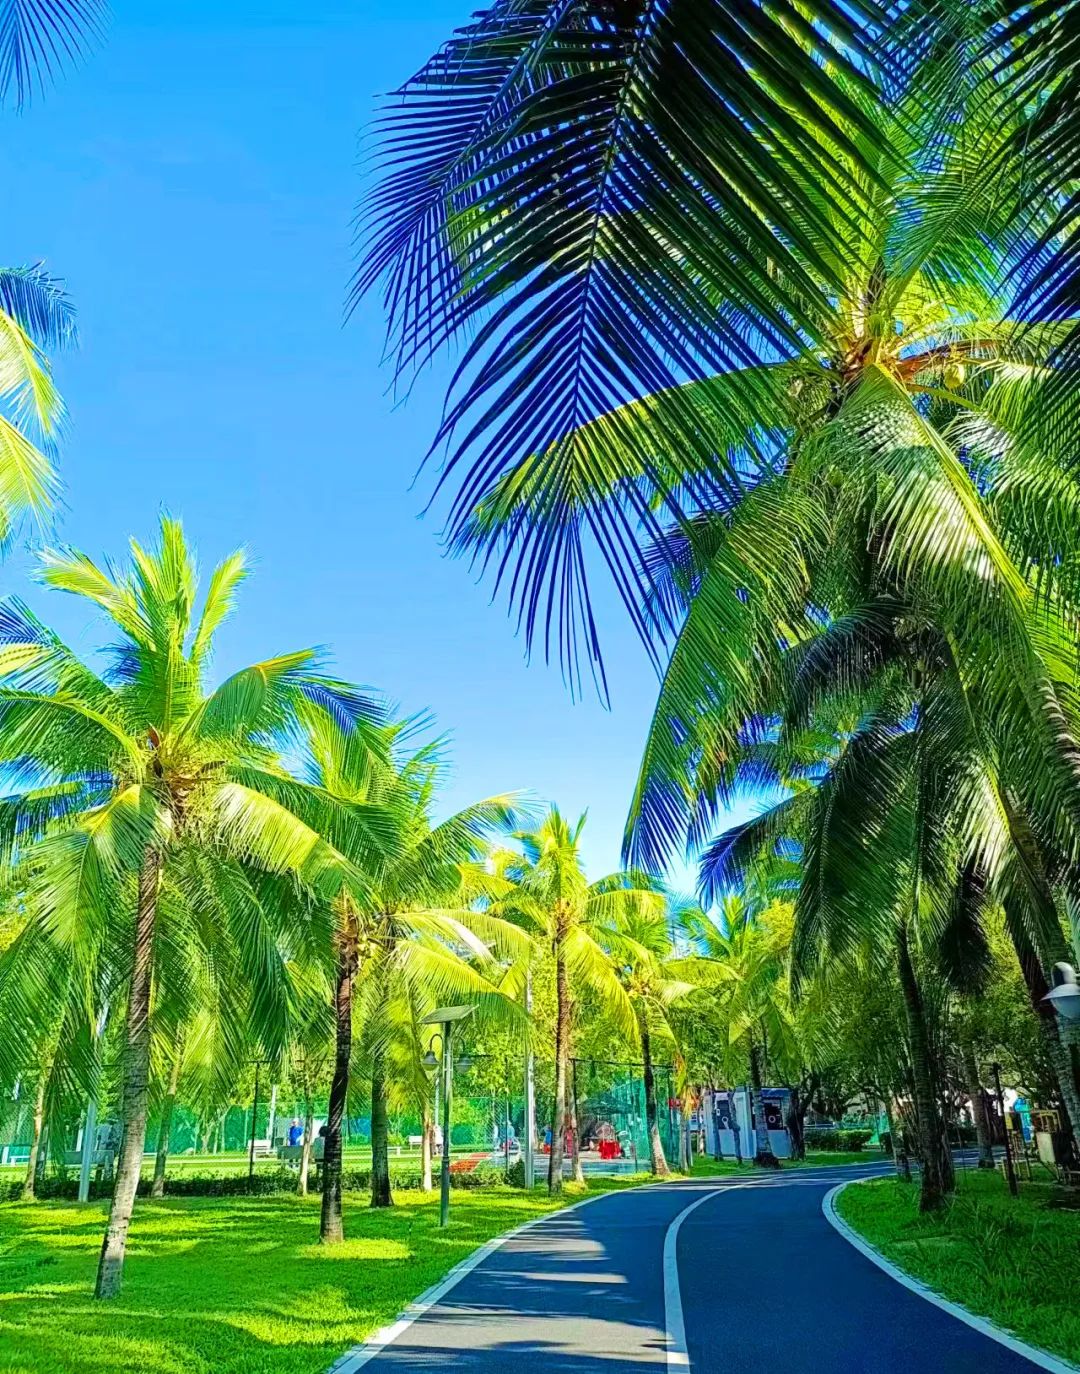 阳光、海滩、椰林这就是海南一个让人心旷神怡的地方